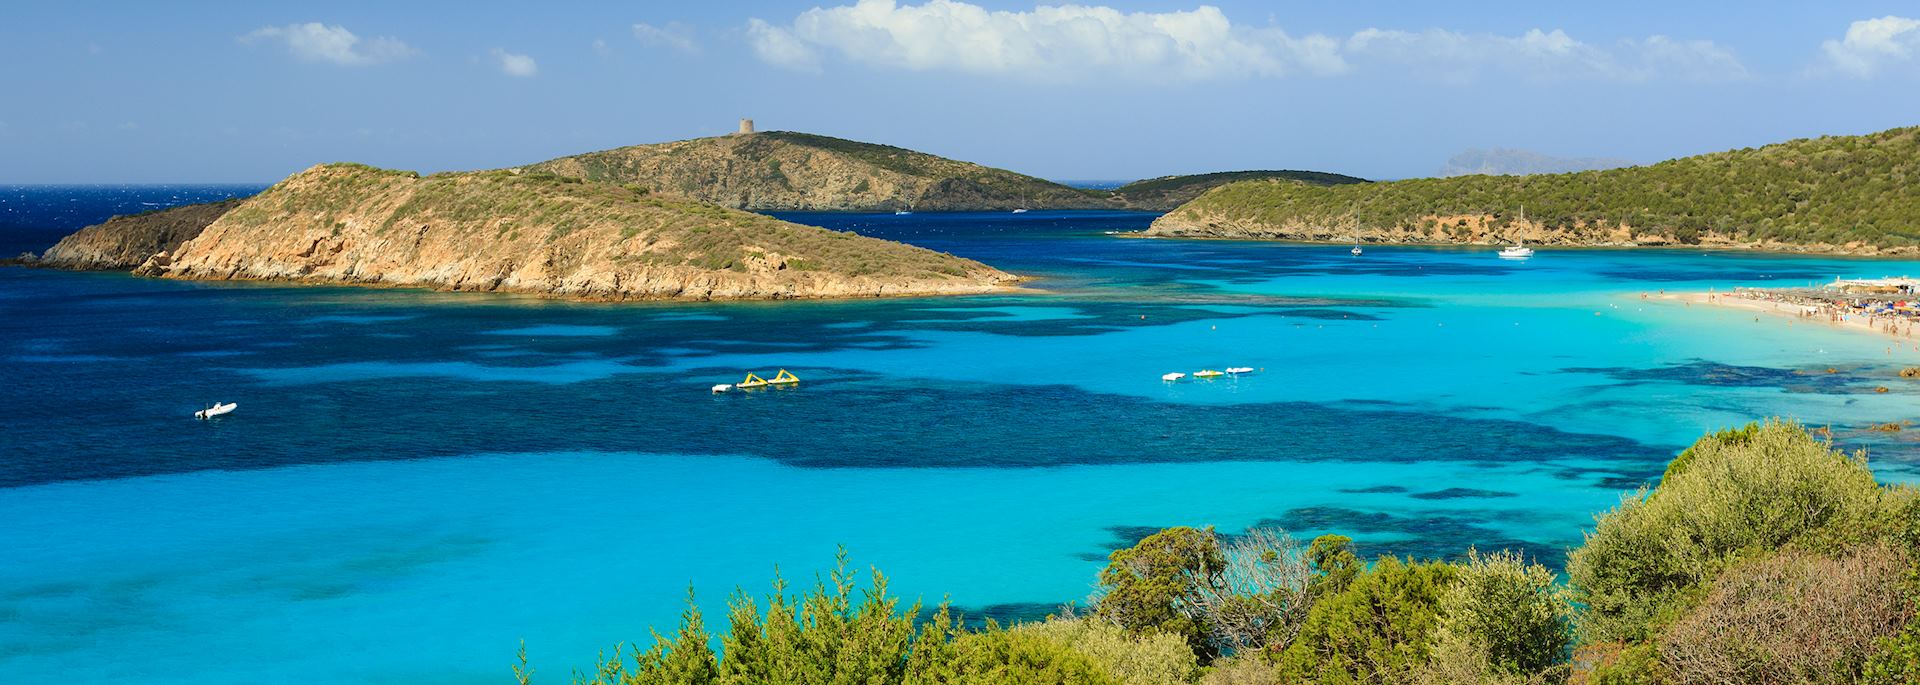 Southern Sardinia coastline